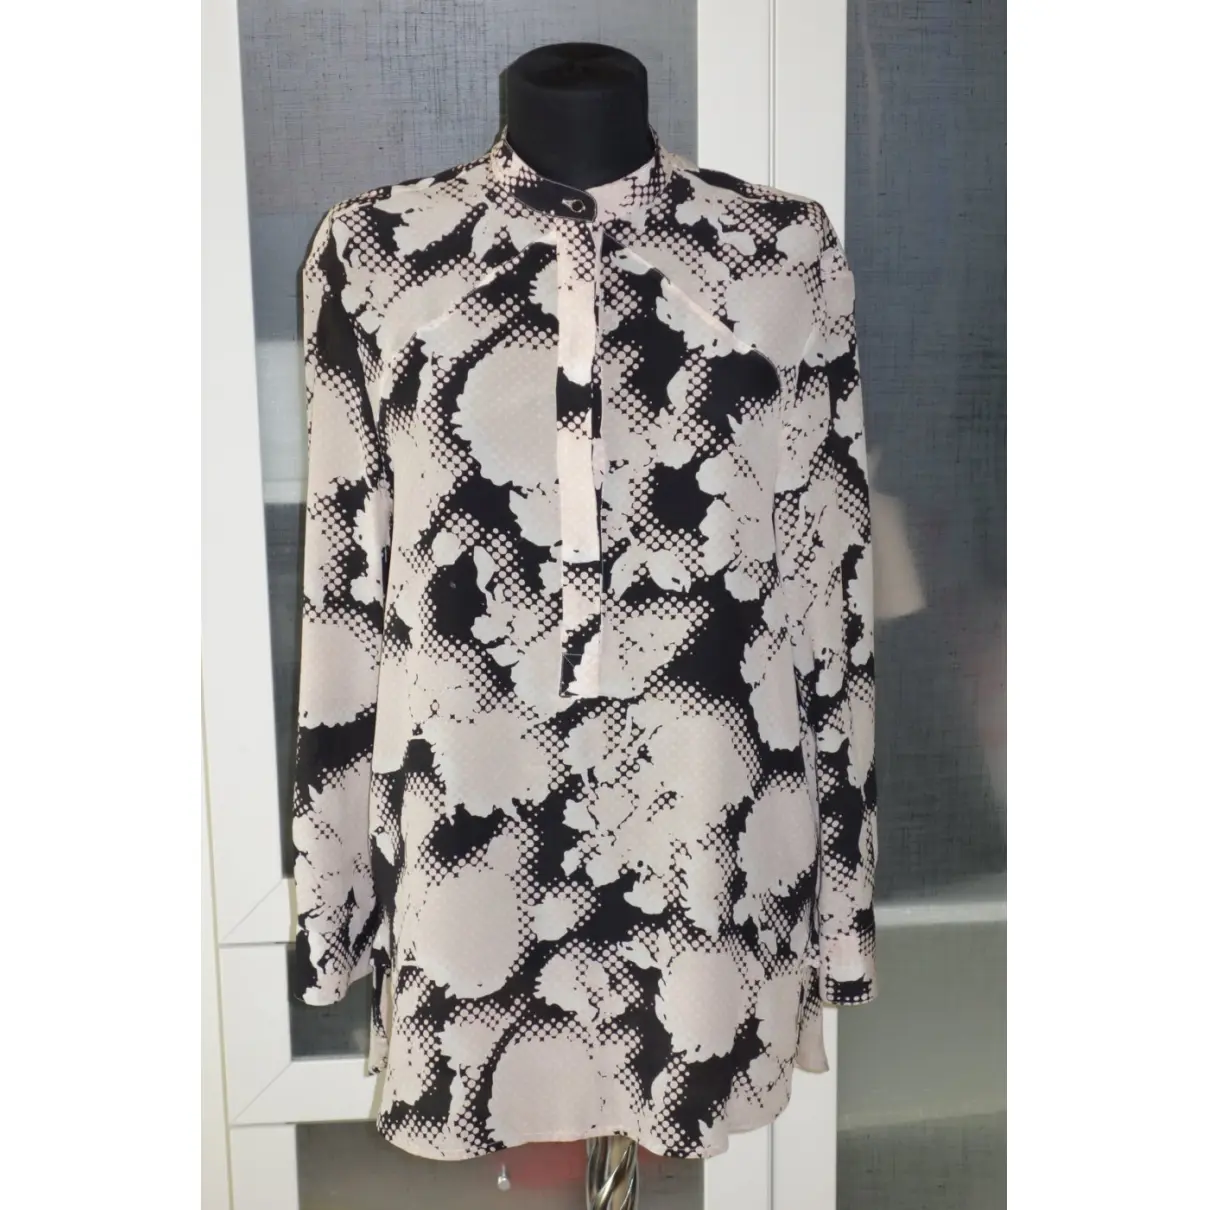 Buy Balenciaga Silk blouse online